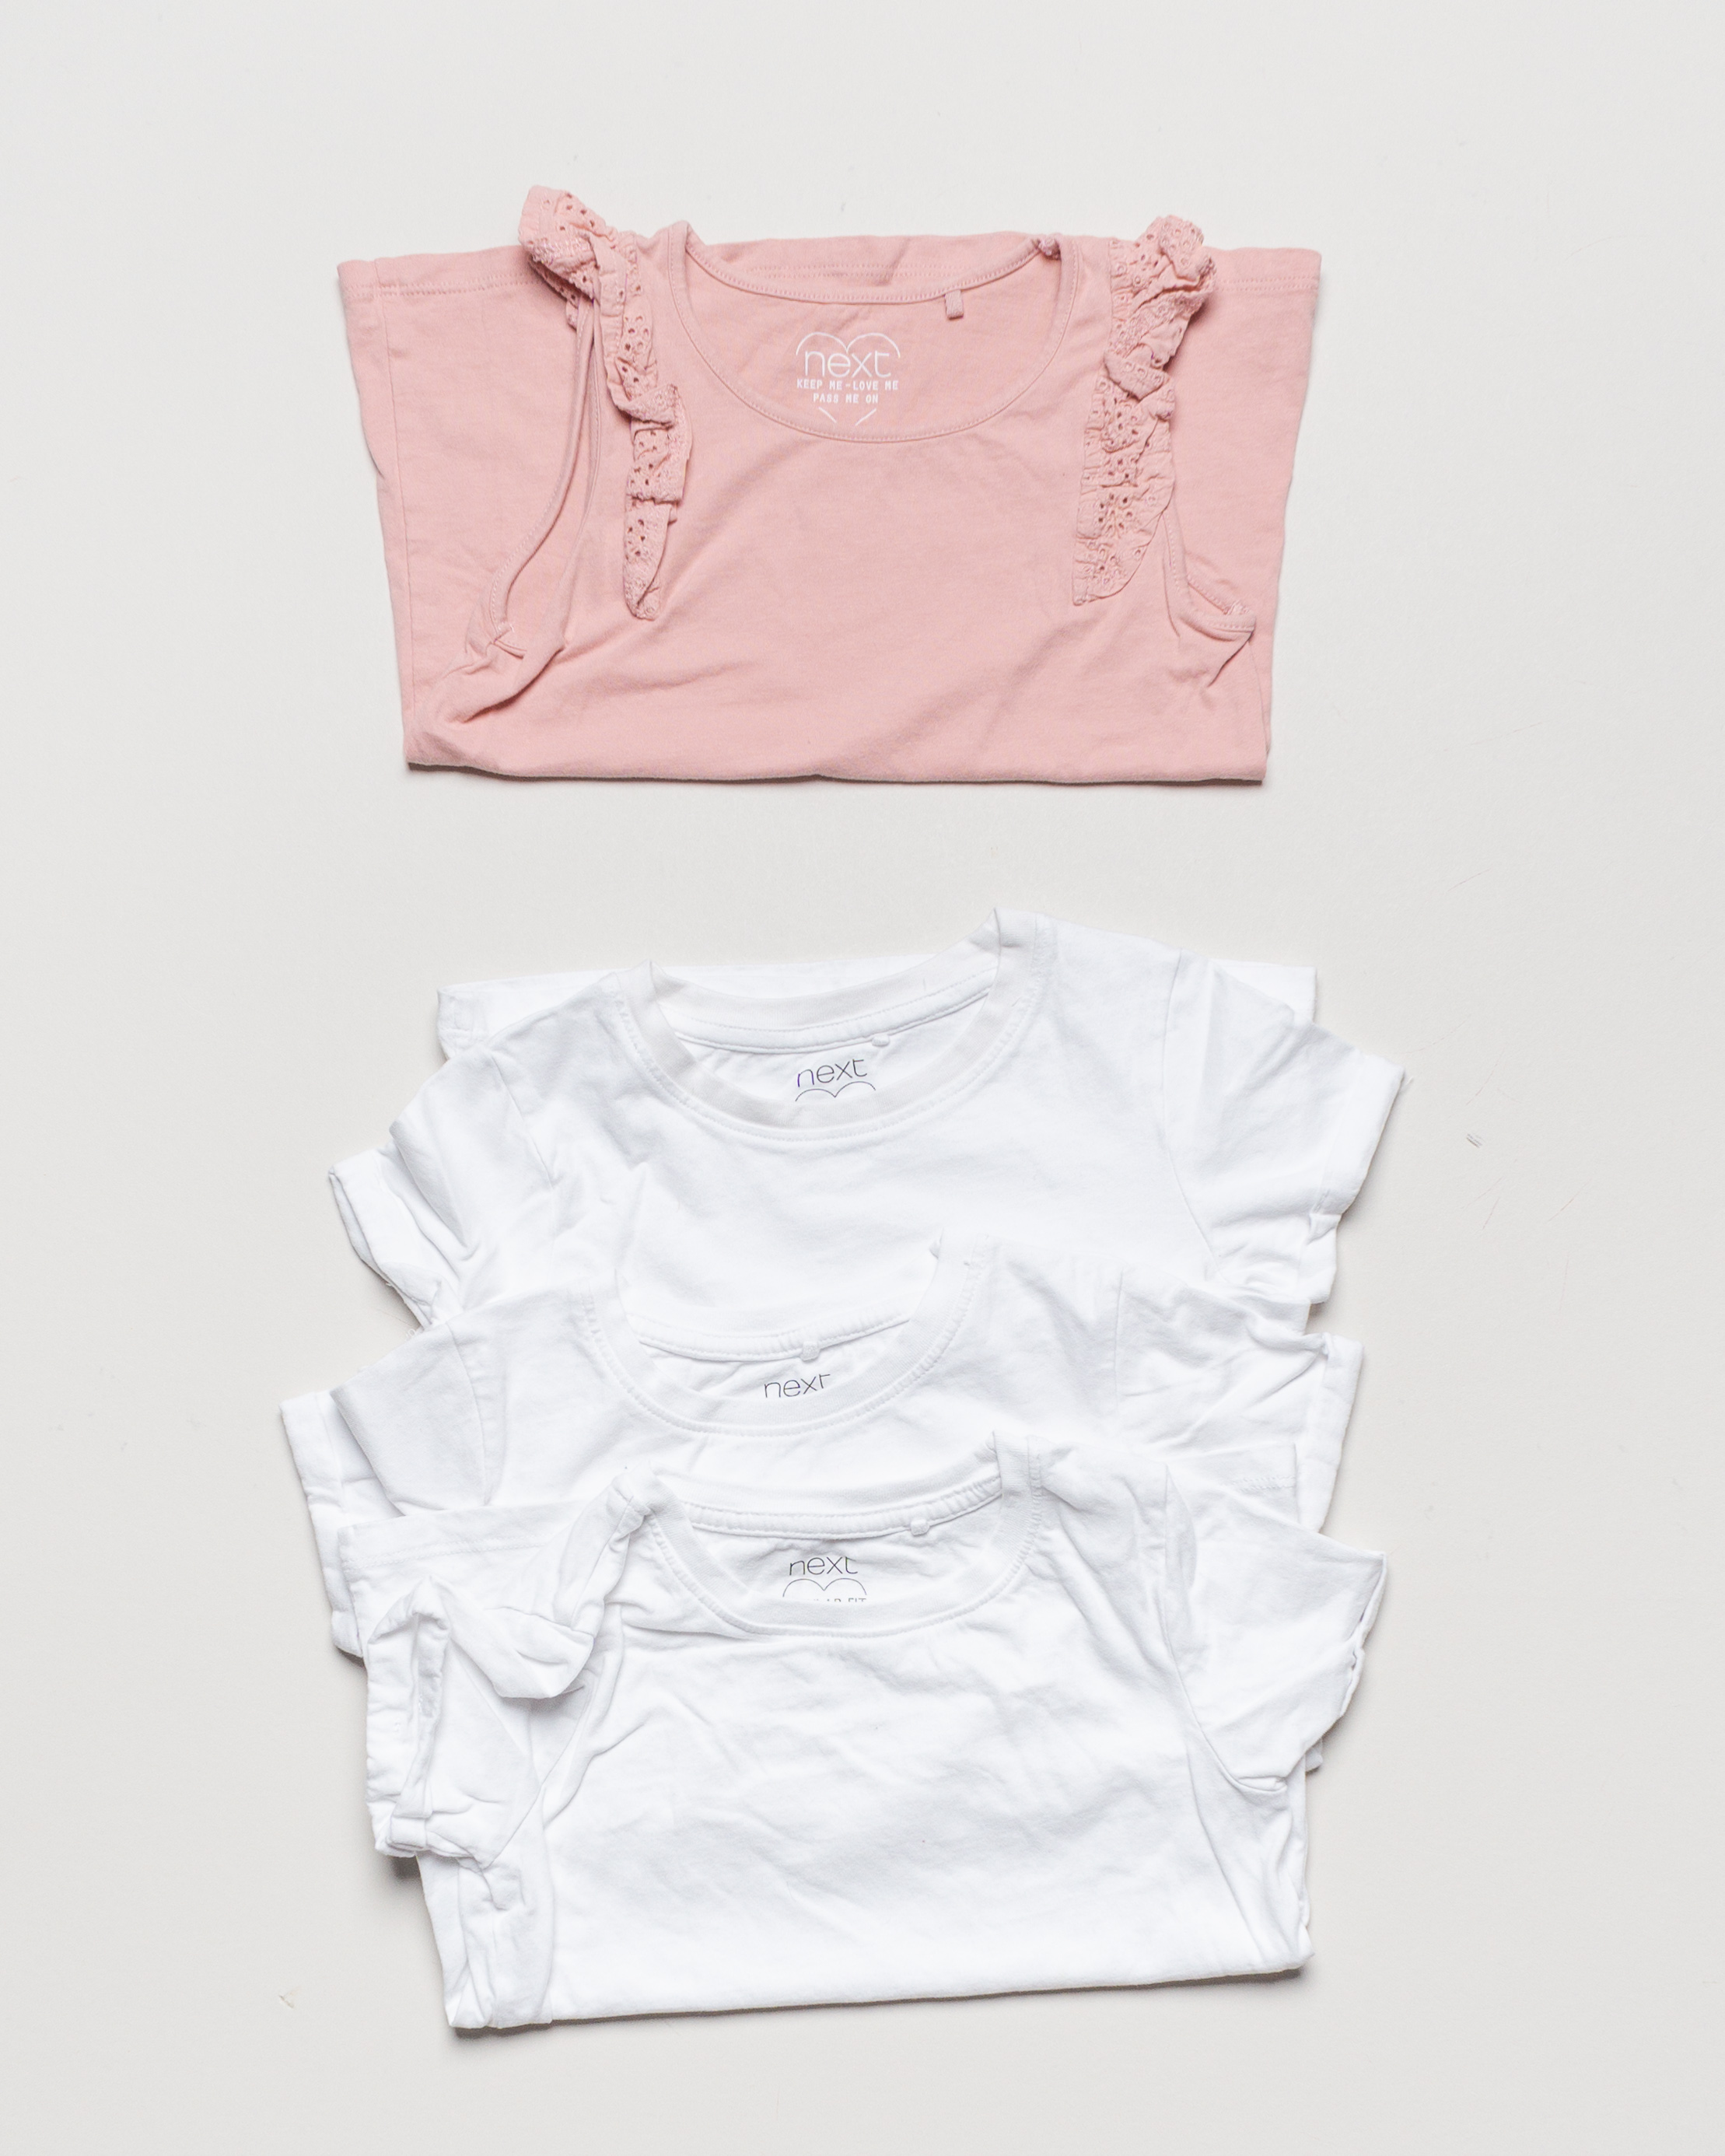 4 Oberteile Gr. 116 – 4x Next Shirt Kurzarm Top rosa weiß Set Pack